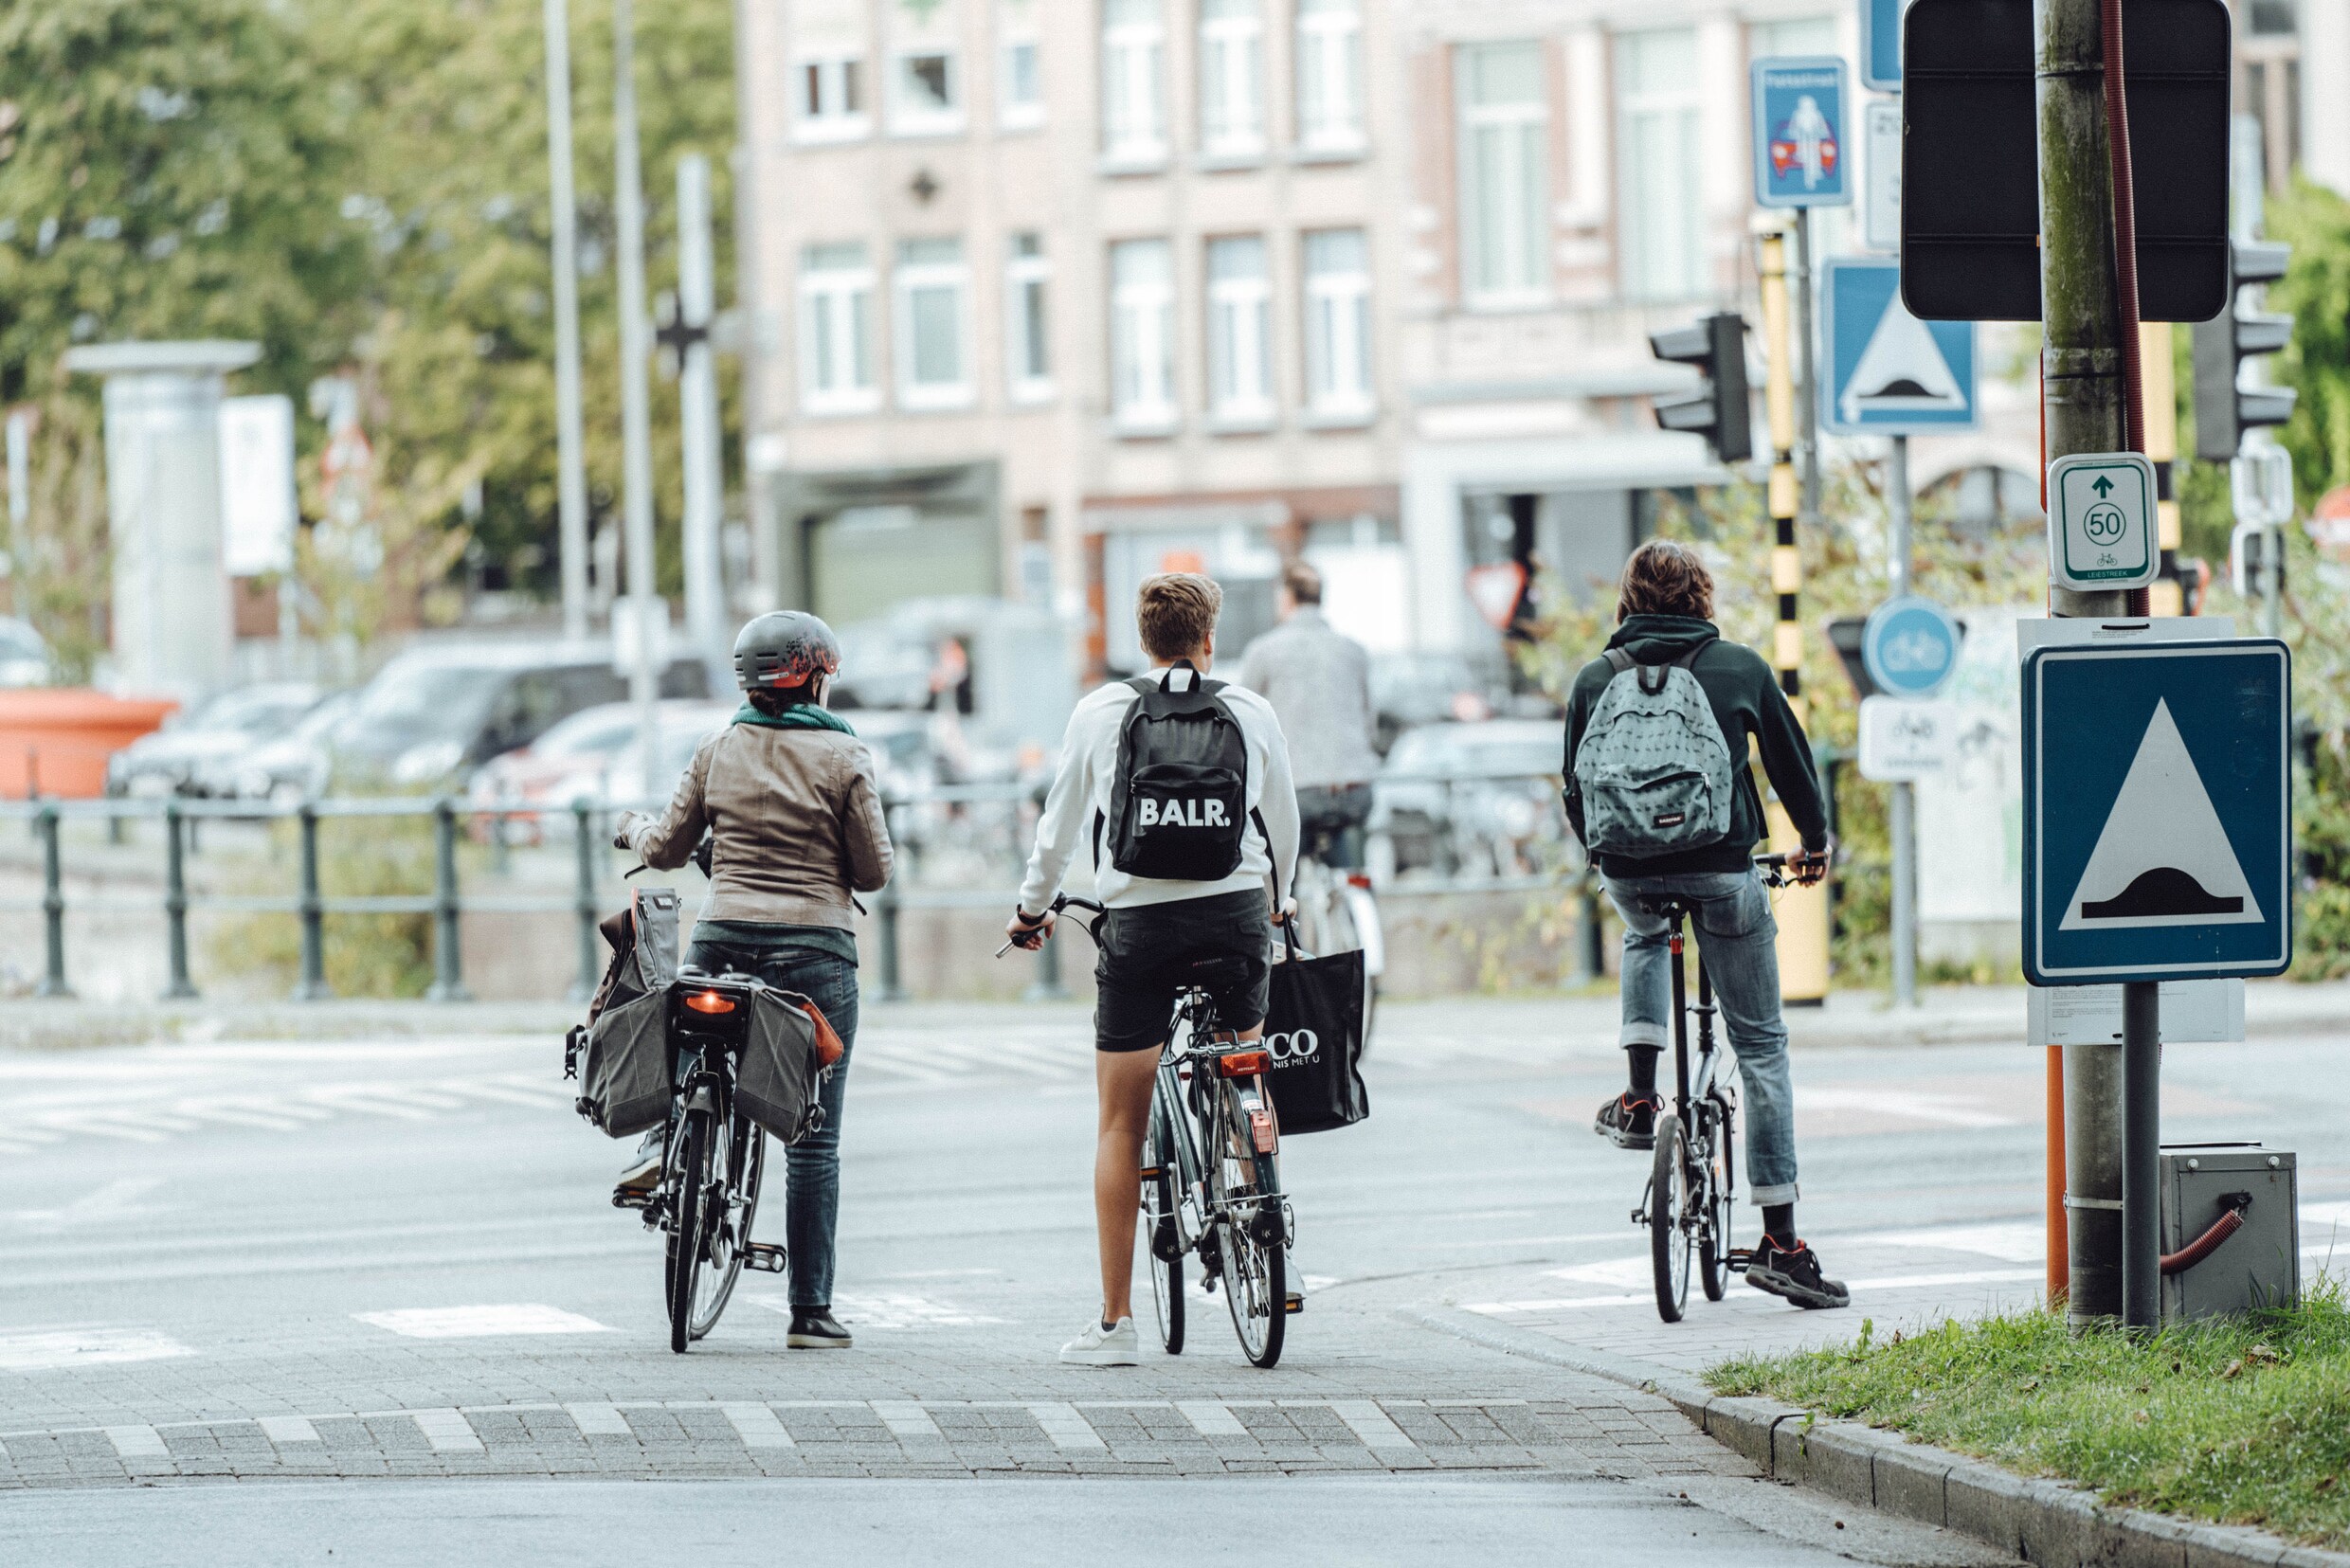 Aantal verkeersdoden stijgt opnieuw met historisch hoogtepunt voor fietsdoden: ‘Wake-upcall voor iedereen’